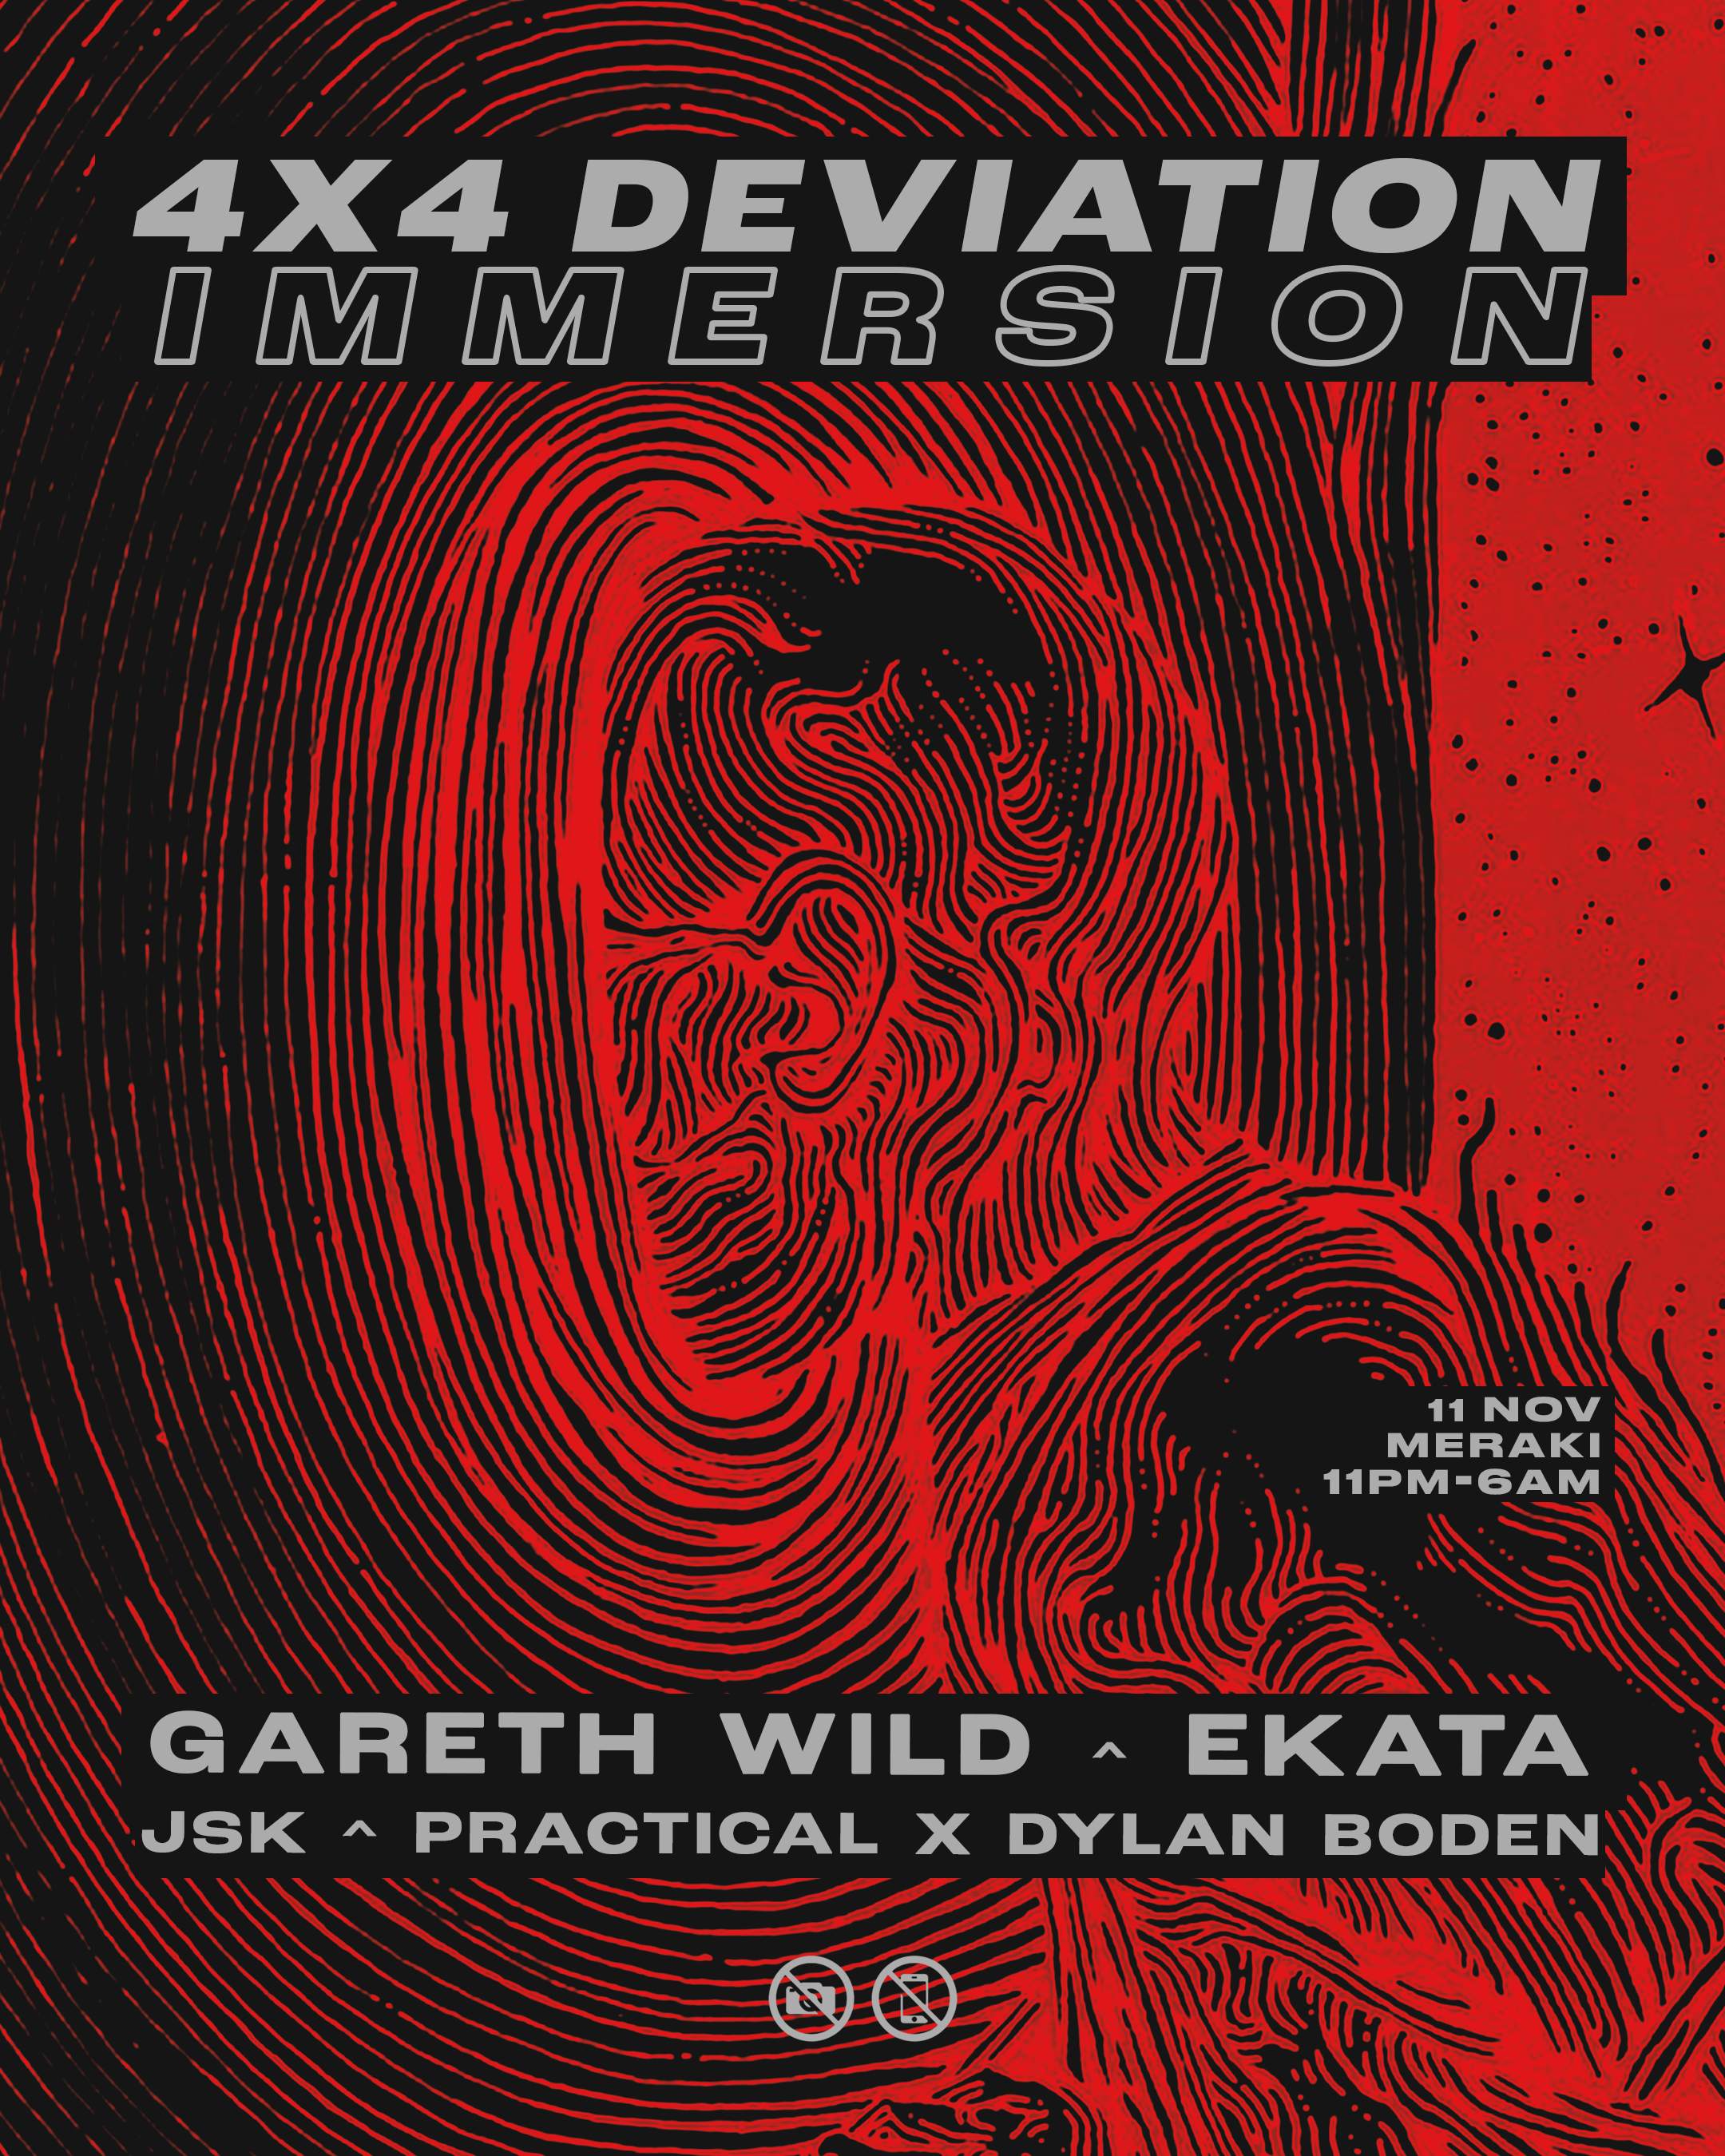 4x4 Deviation presents: IMMERSION w/ Gareth Wild & EKATA - フライヤー表